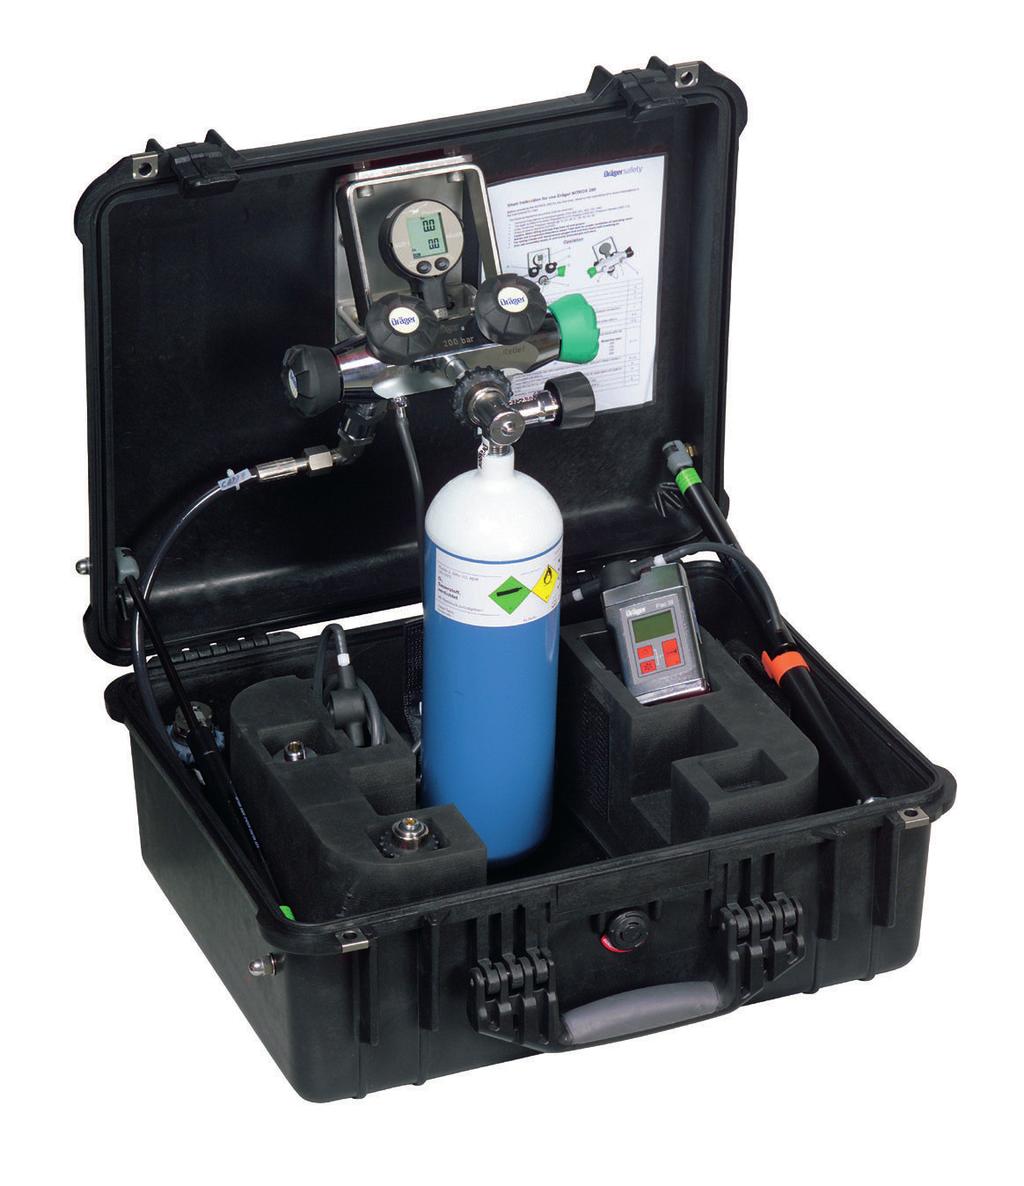 Dräger NITROX 200 Wyposażenie do nurkowania Dräger Nitrox 200 to konﬁgurowalne i ręcznie obsługiwane urządzenie do wytwarzania mieszanek nitroksowych z użyciem tlenu (do 200 bar) i